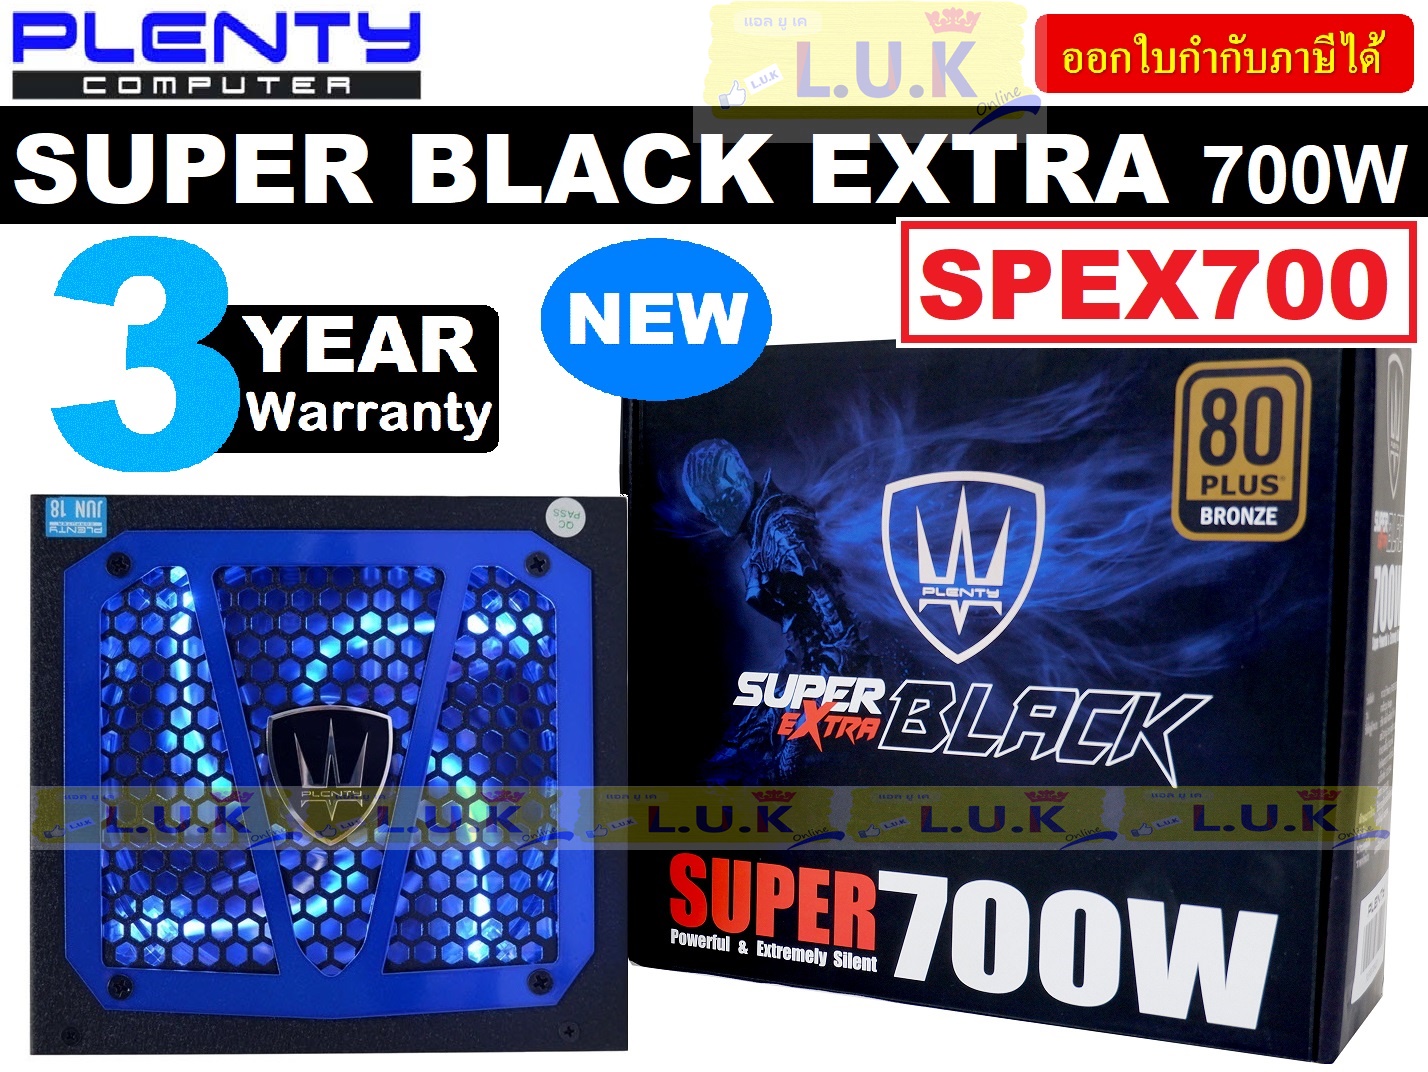 POWER SUPPLY (อุปกรณ์จ่ายไฟ) PLENTY SUPER BLACK EXTRA 700W (ATX-700) SPEX700 * พัดลม 12cm * - รับประกัน 3 ปี